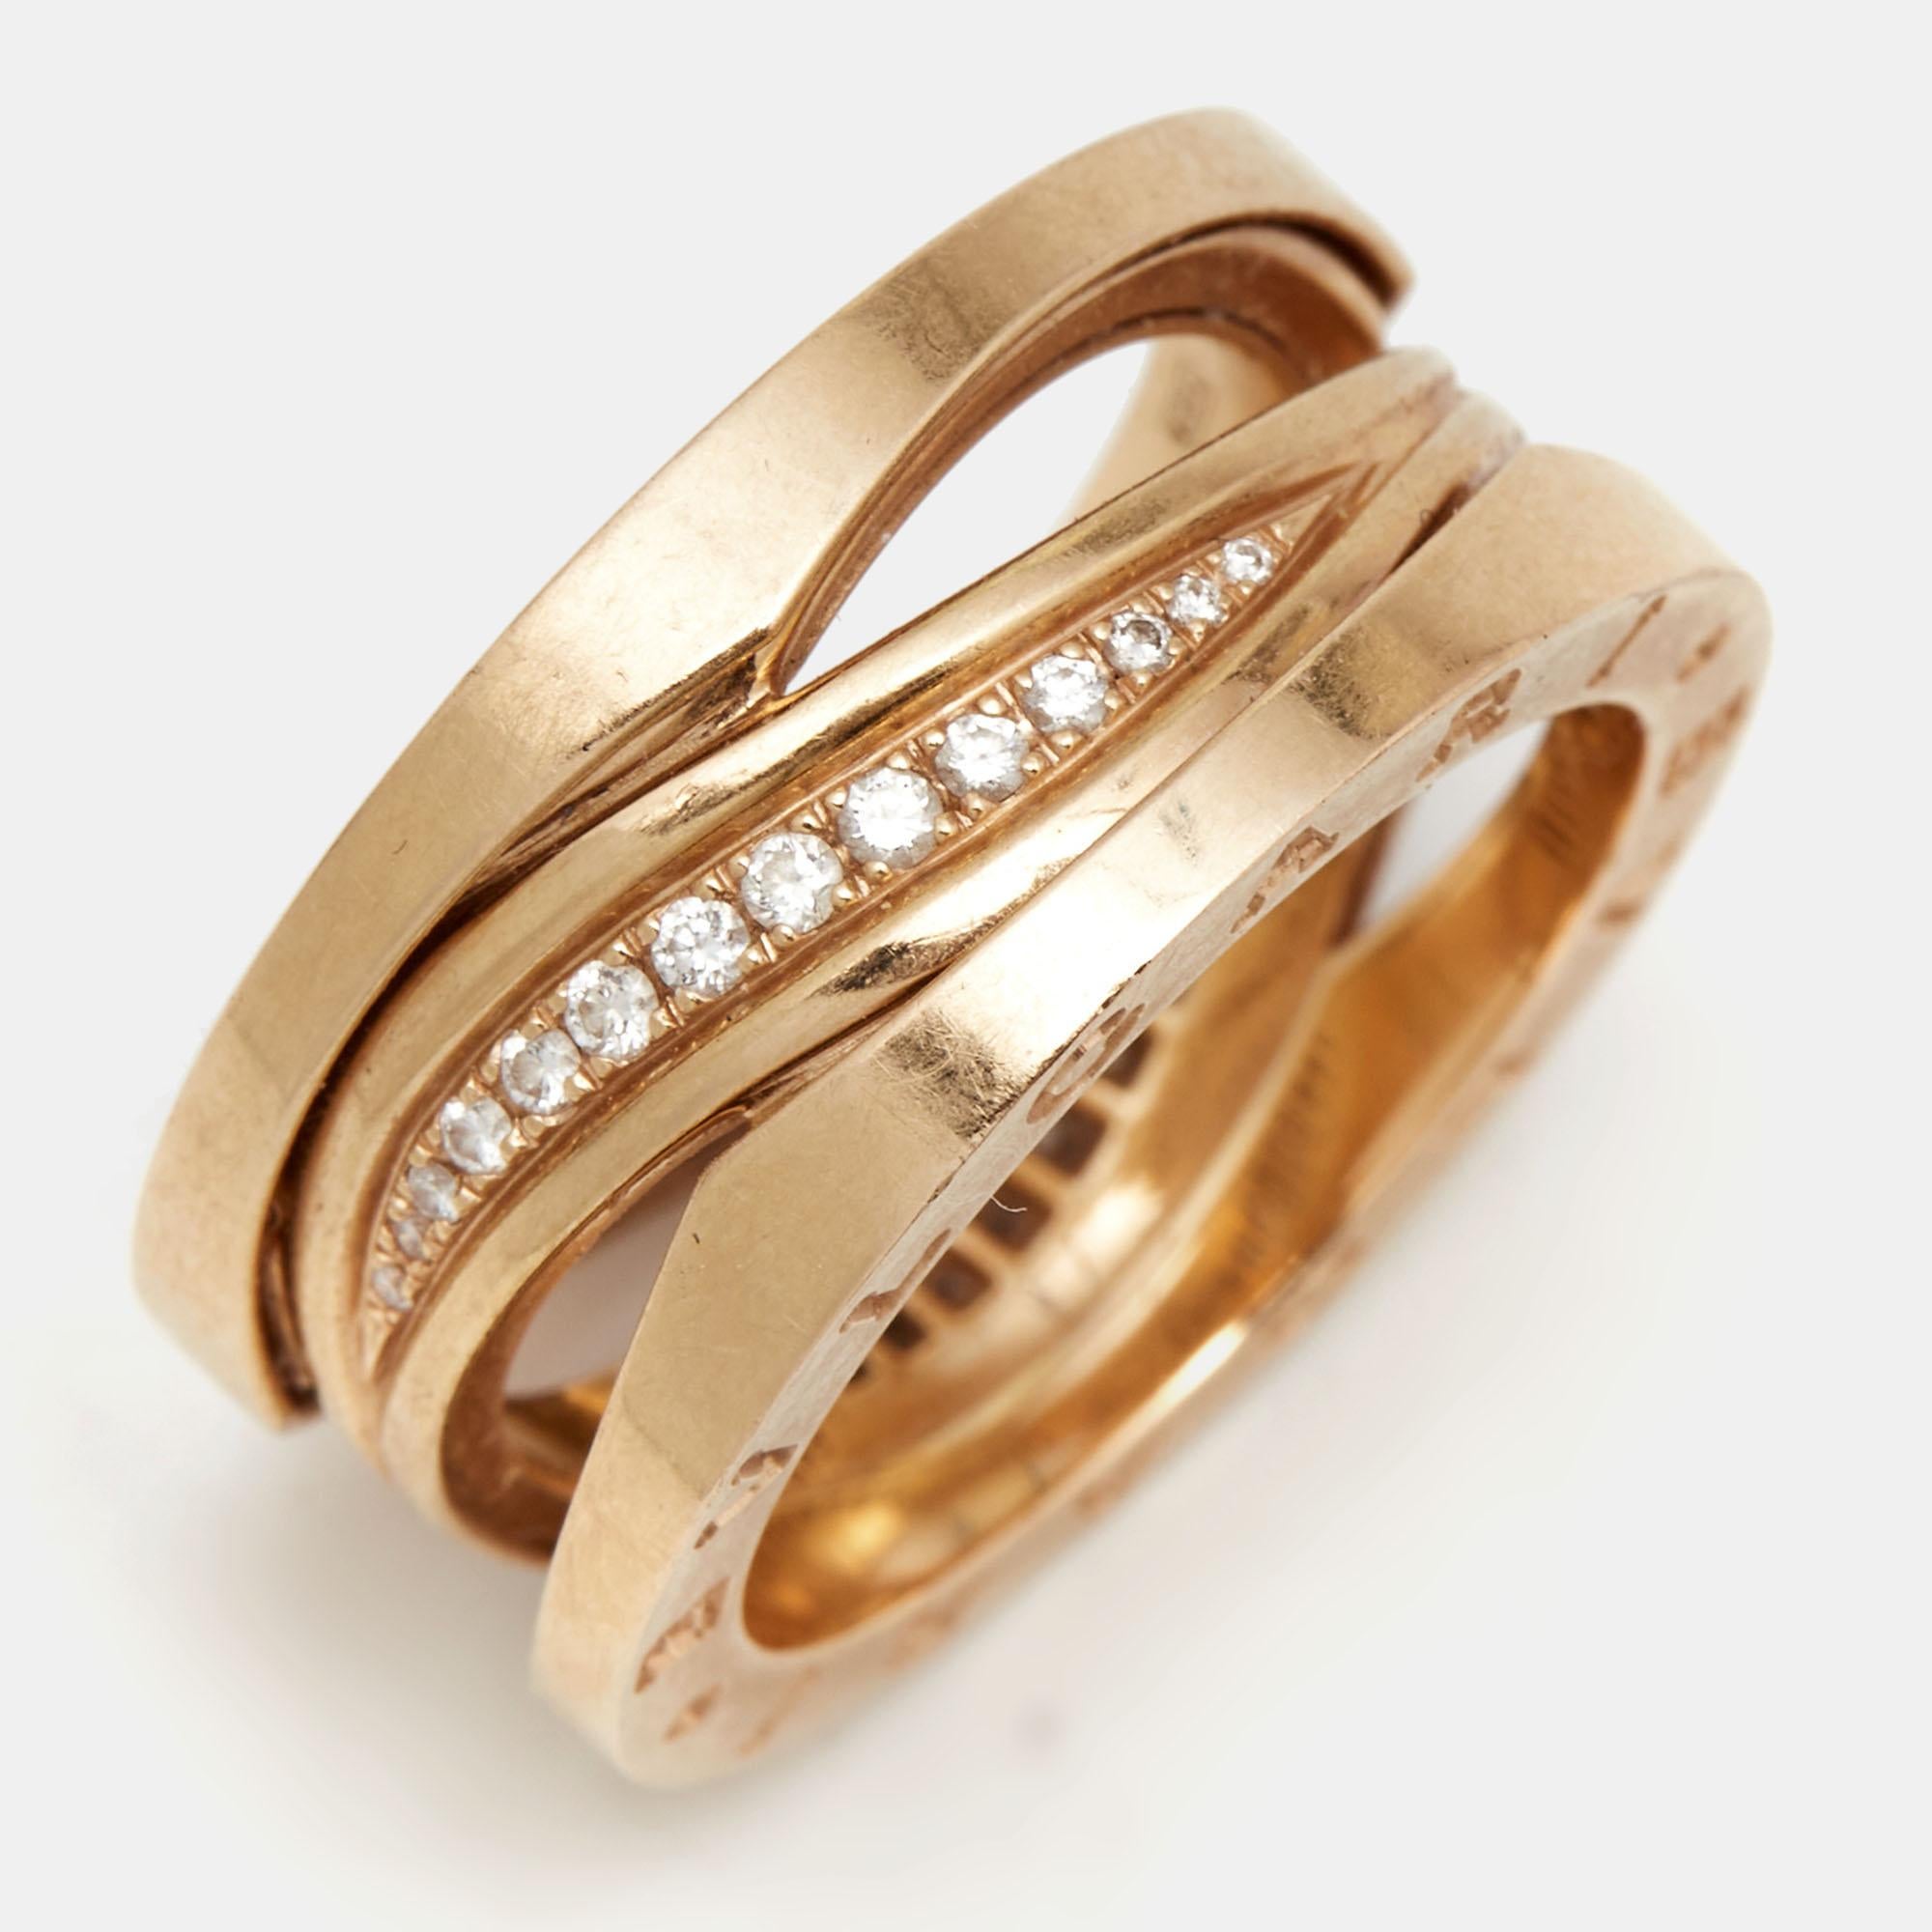 Für die Frau, die einen raffinierten Geschmack für edlen Schmuck hat, bietet Bvlgari diesen makellos gefertigten Ring, der wie geschaffen ist, um gelobt zu werden. Der Ring hat einen eher modernen Stil mit Bändern aus 18 Karat Roségold, die durch